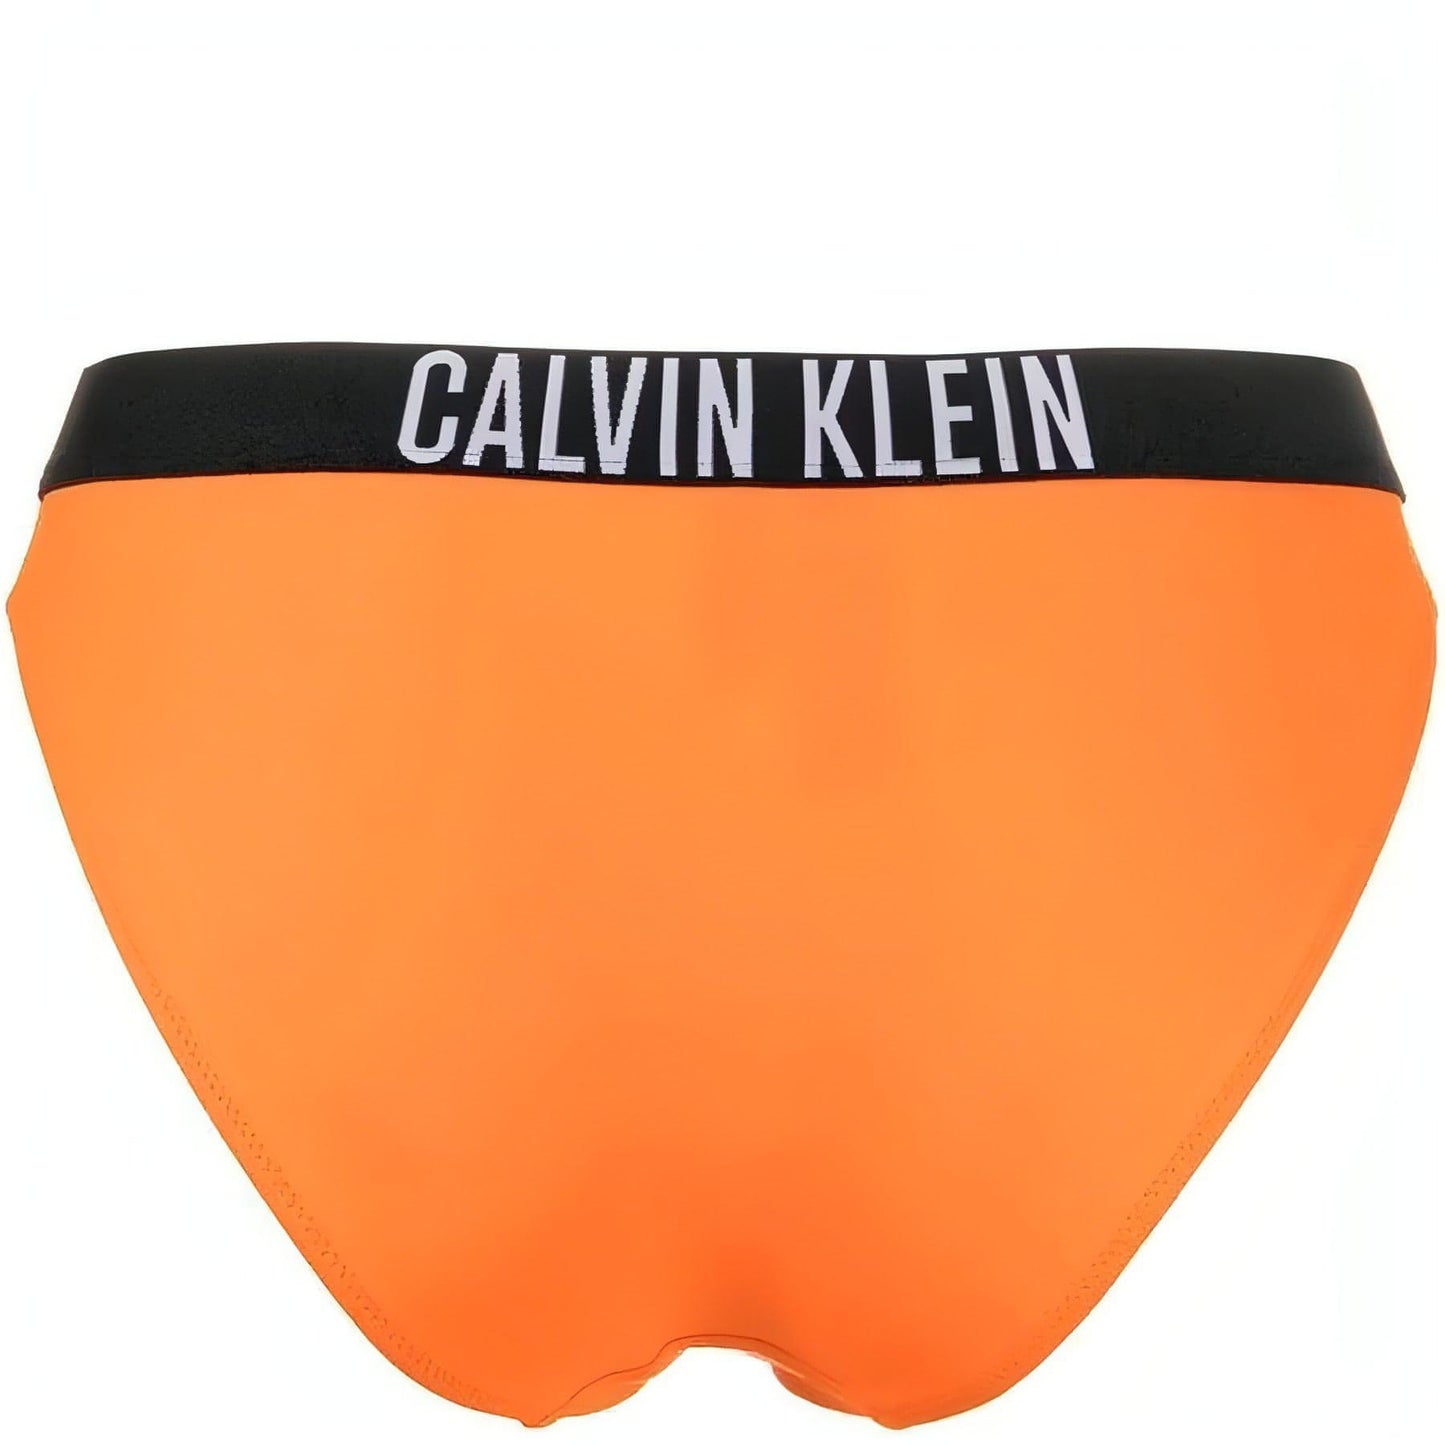 CALVIN KLEIN moteriški oranžiniai maudymosi apatiniai